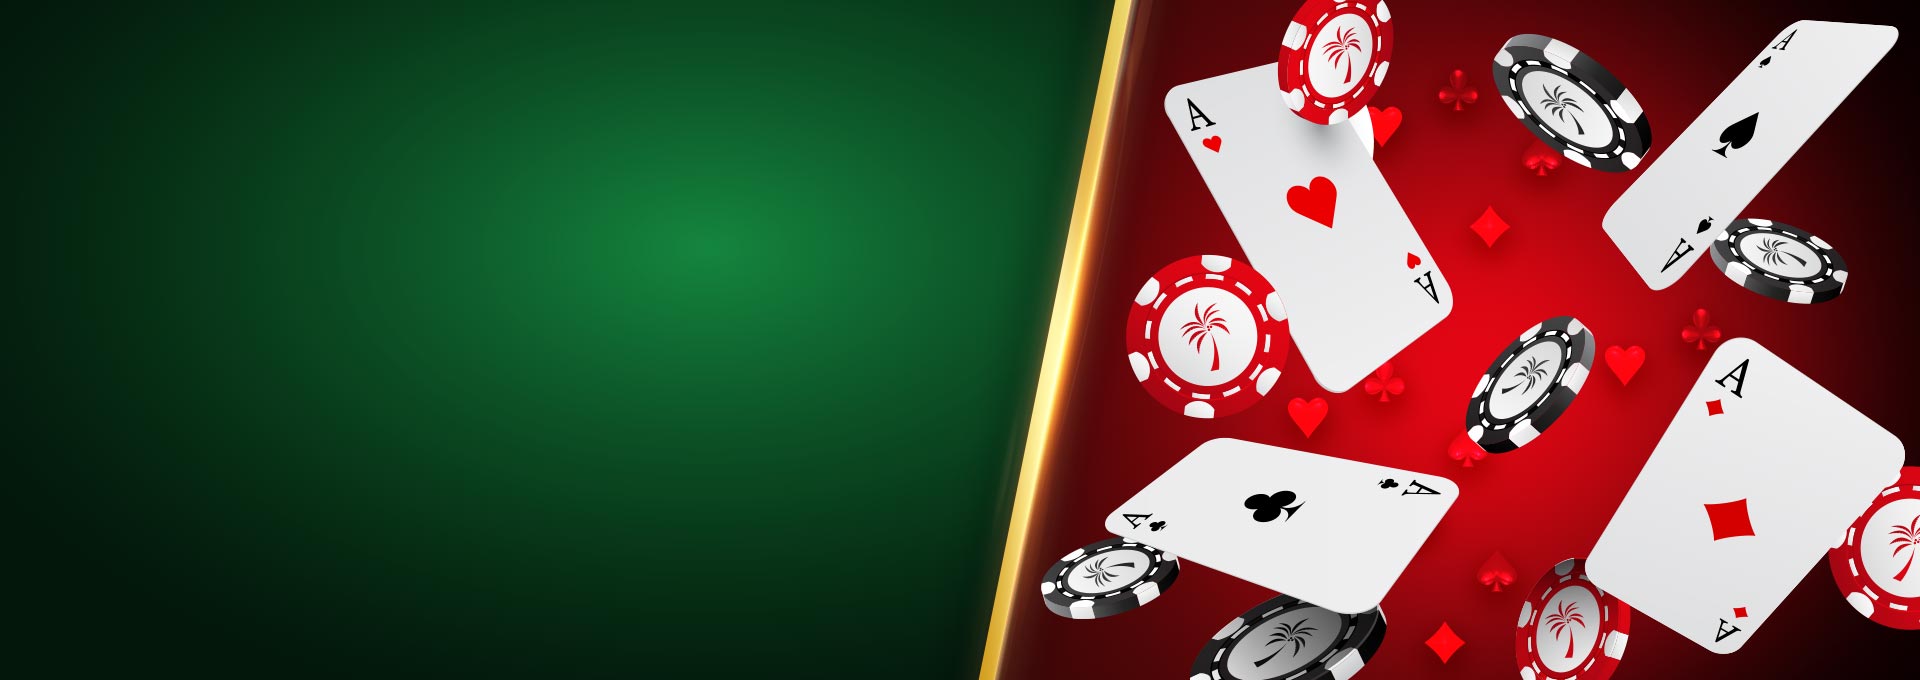 Играть в казино европа в рулетку бесплатно